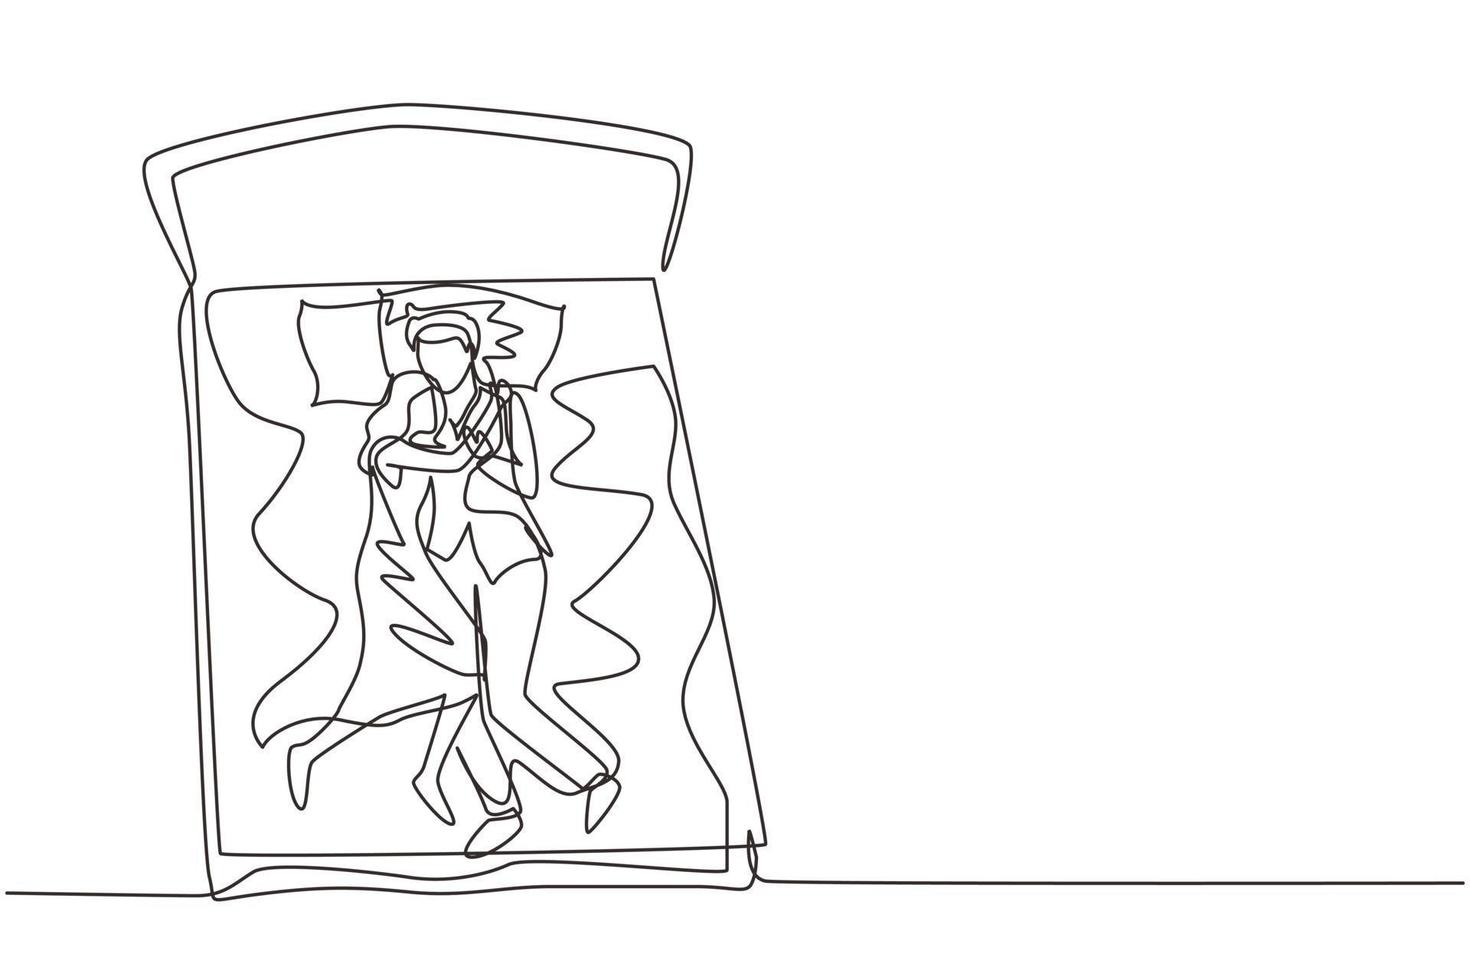 uma linha contínua desenhando casal masculino e feminino abraçando carinhosamente na cama, homens e mulheres dormindo na cama enquanto se abraçam amorosamente, dormindo pose de amante. gráfico de vetor de design de desenho de linha única